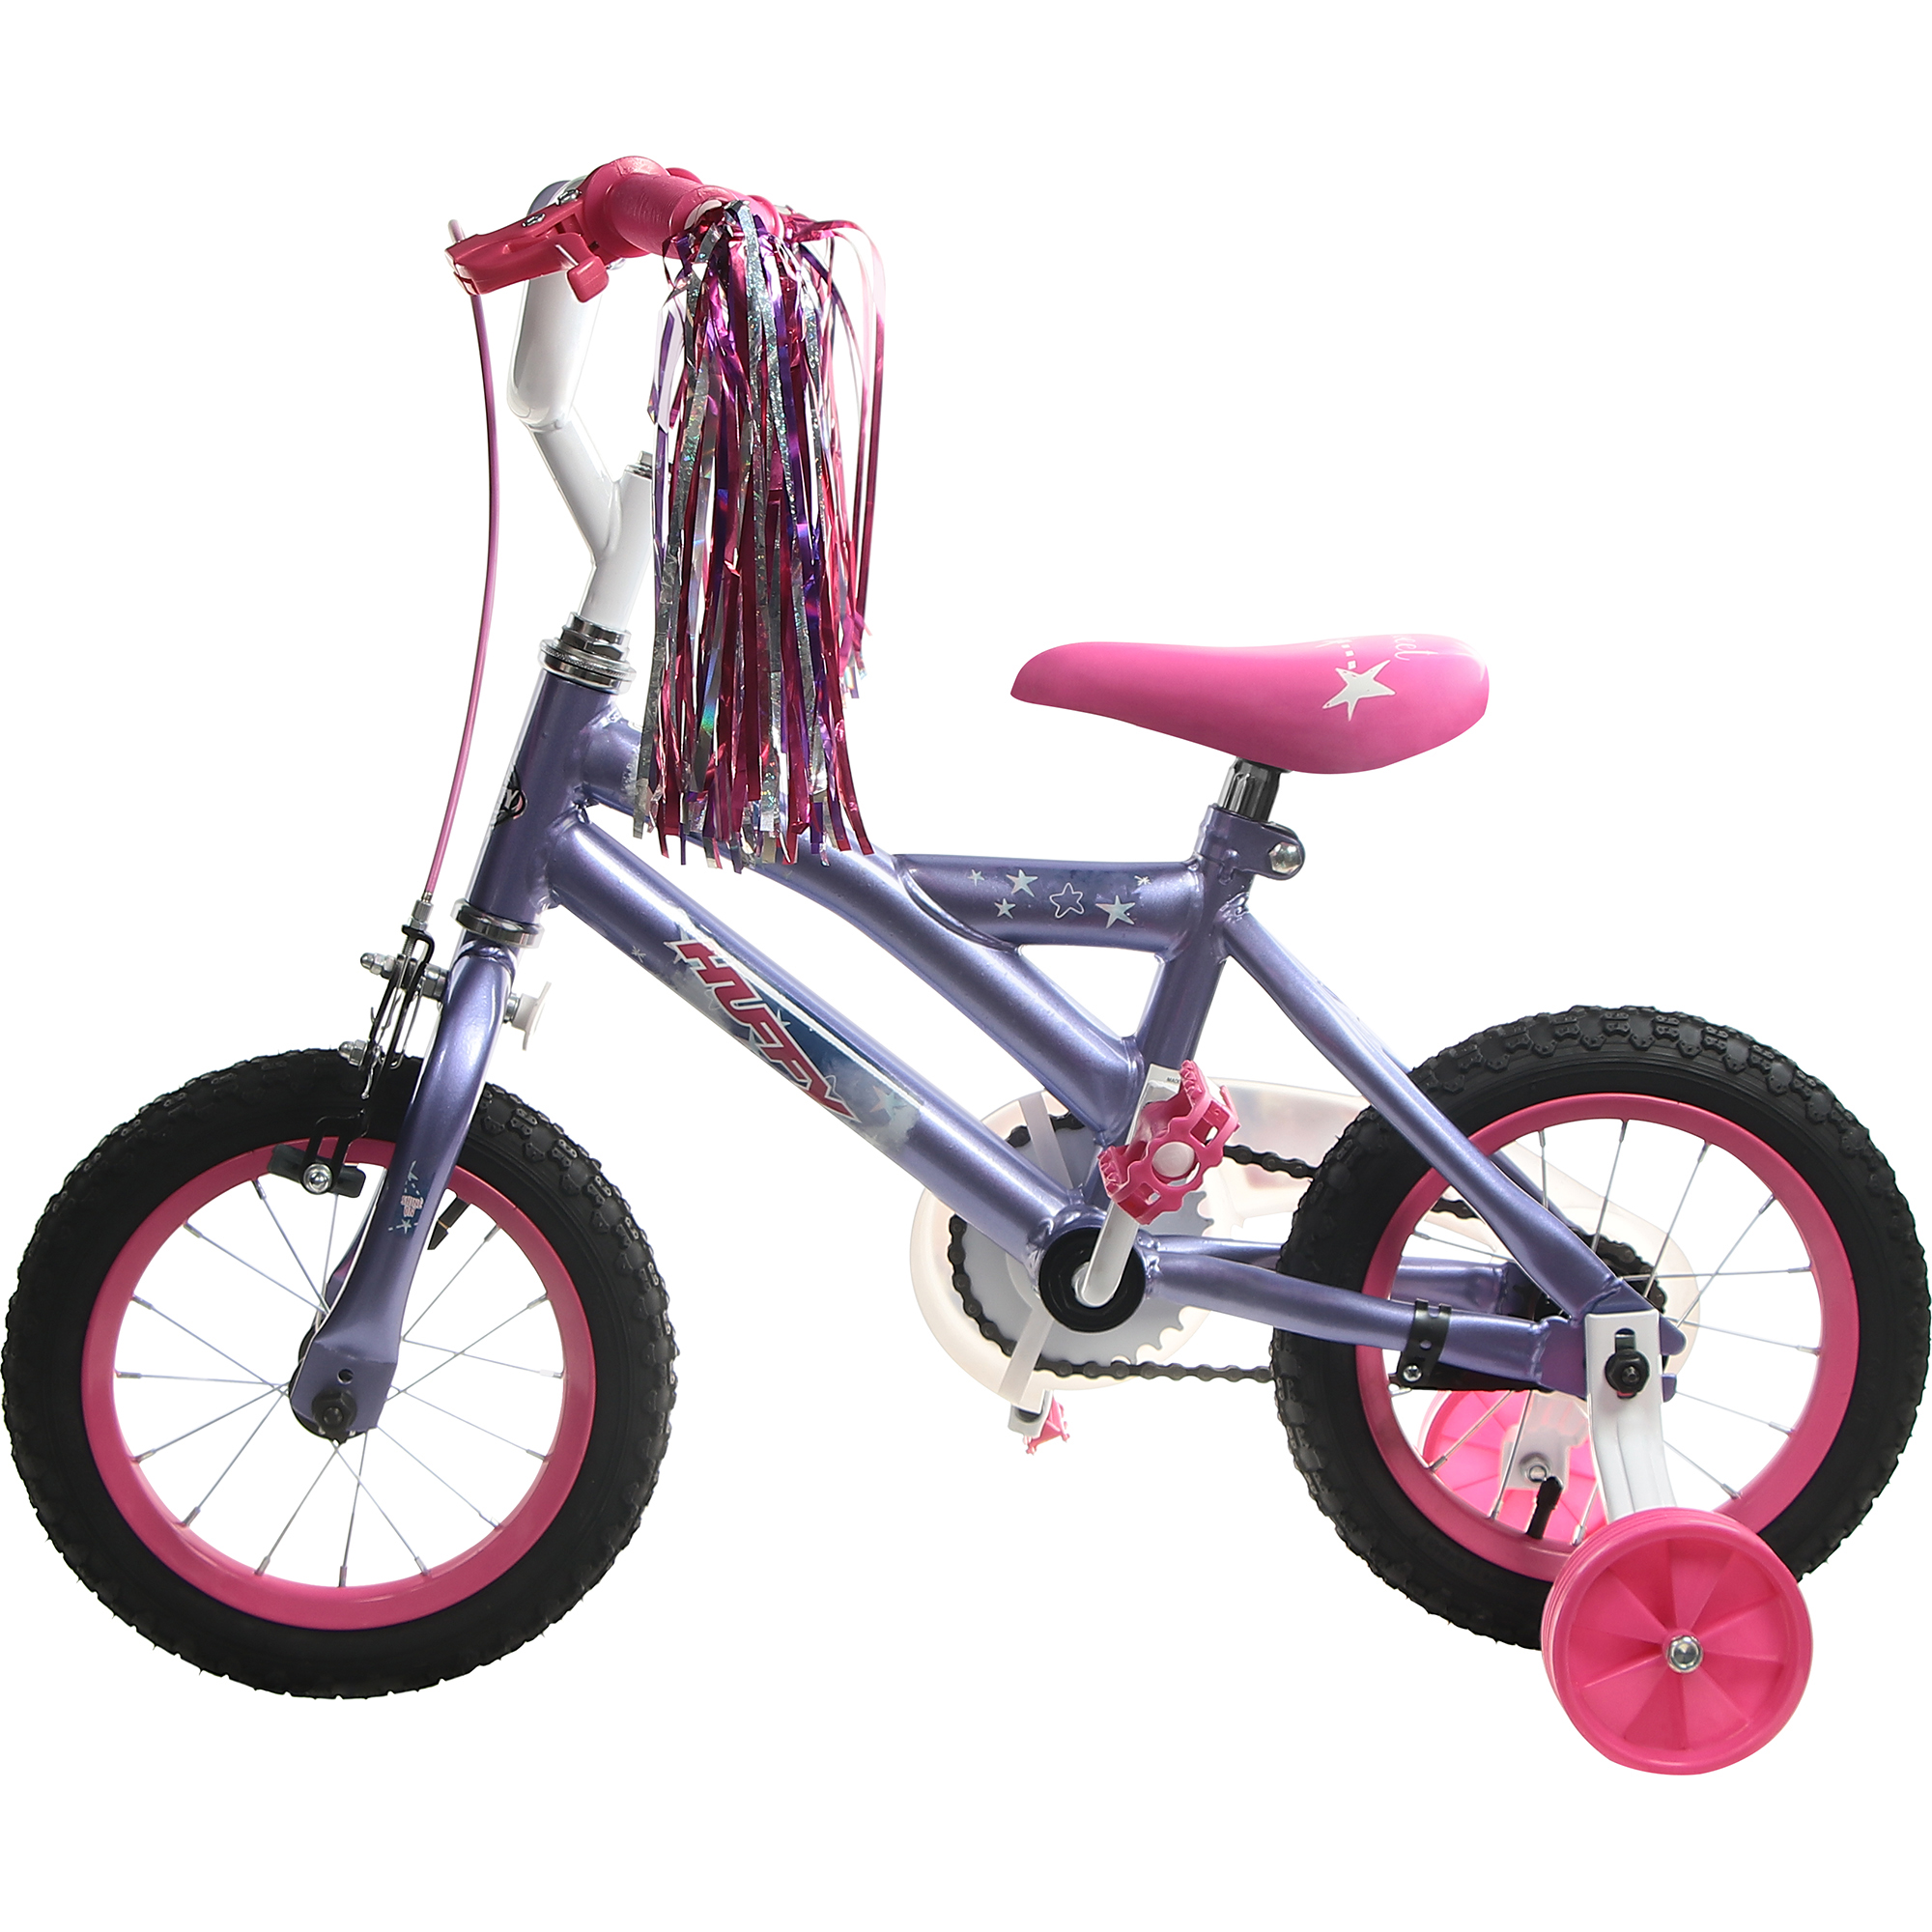 Велосипед детский Huffy So sweet, 12, для девочек кашпо велосипед